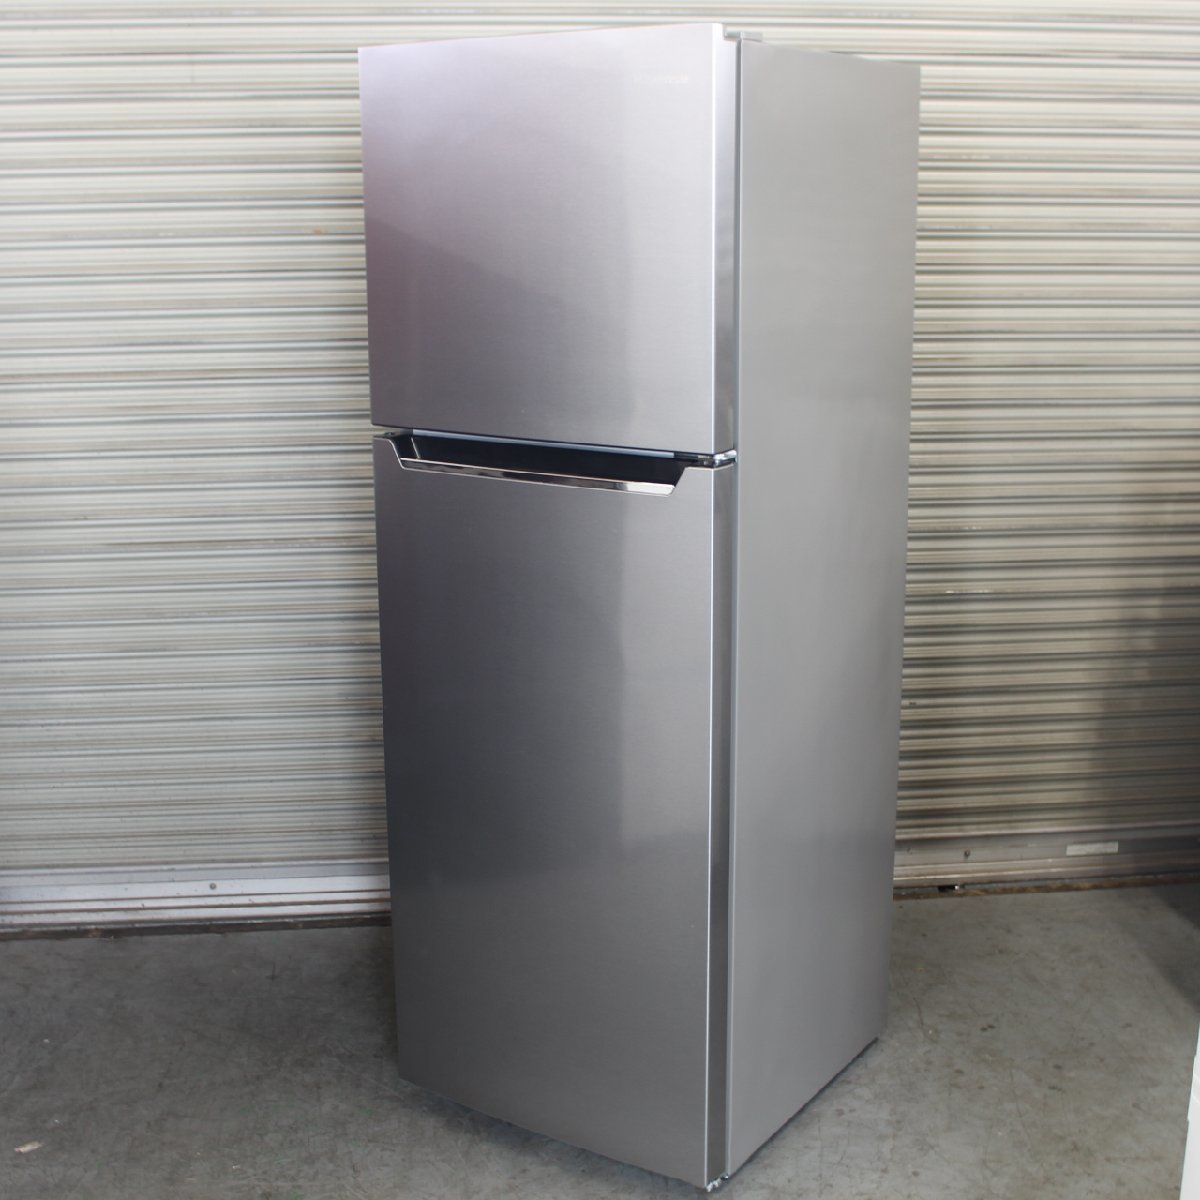 東京都世田谷区にて ハイセンス ノンフロン冷凍冷蔵庫 HR-B2302 2020年製 を出張買取させて頂きました。